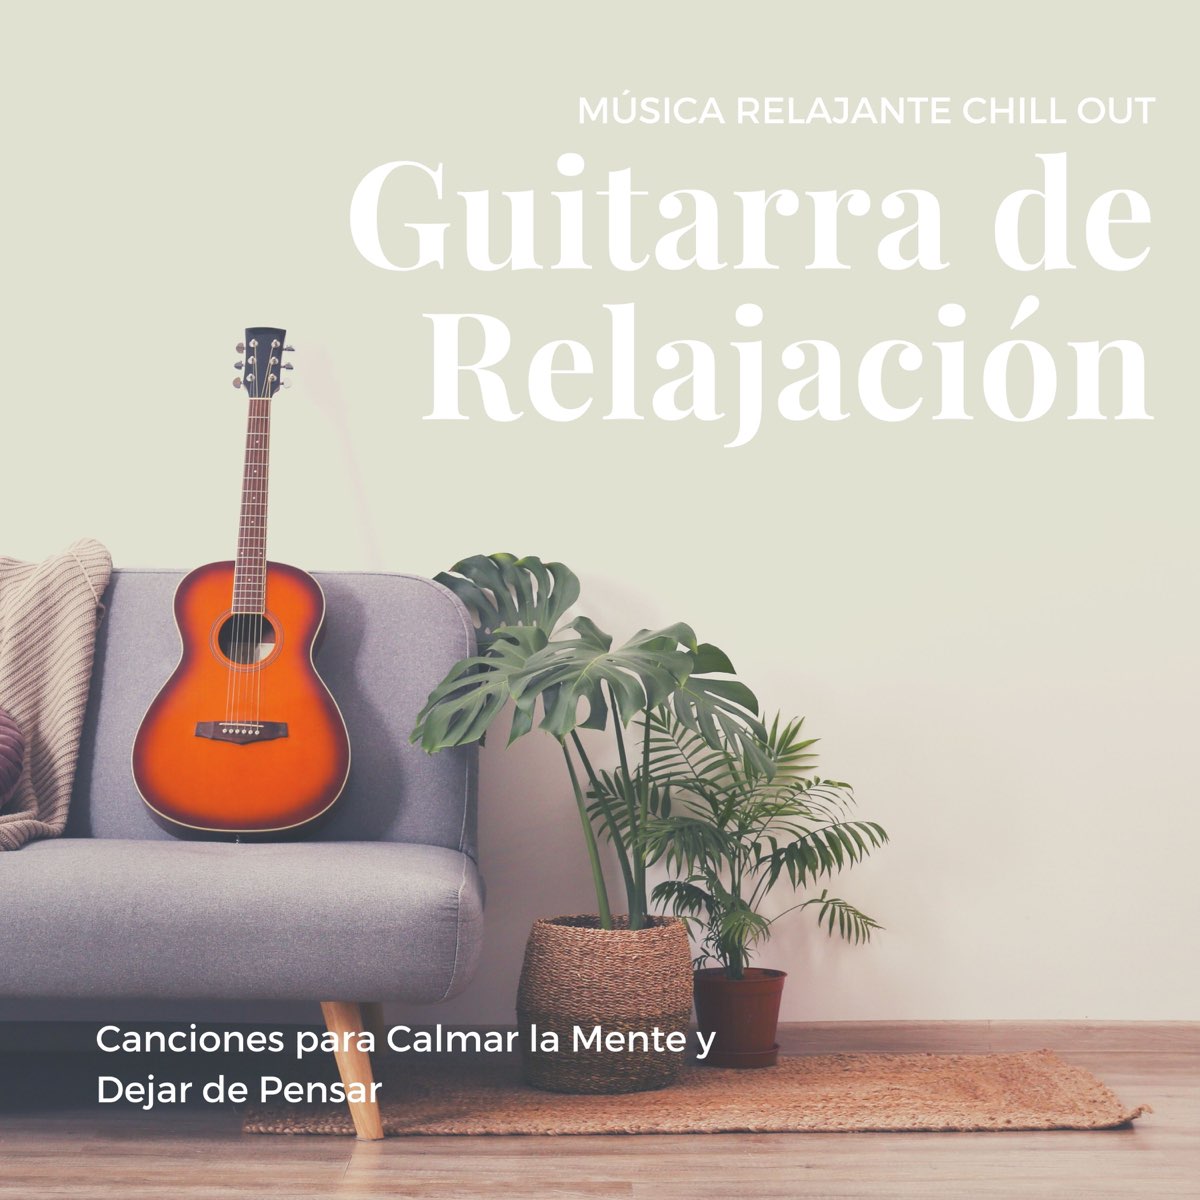 Pagar tributo hará arquitecto Guitarra de Relajación - Música Relajante Chill Out, Canciones para Calmar  la Mente y Dejar de Pensar de Buena Mañana en Apple Music